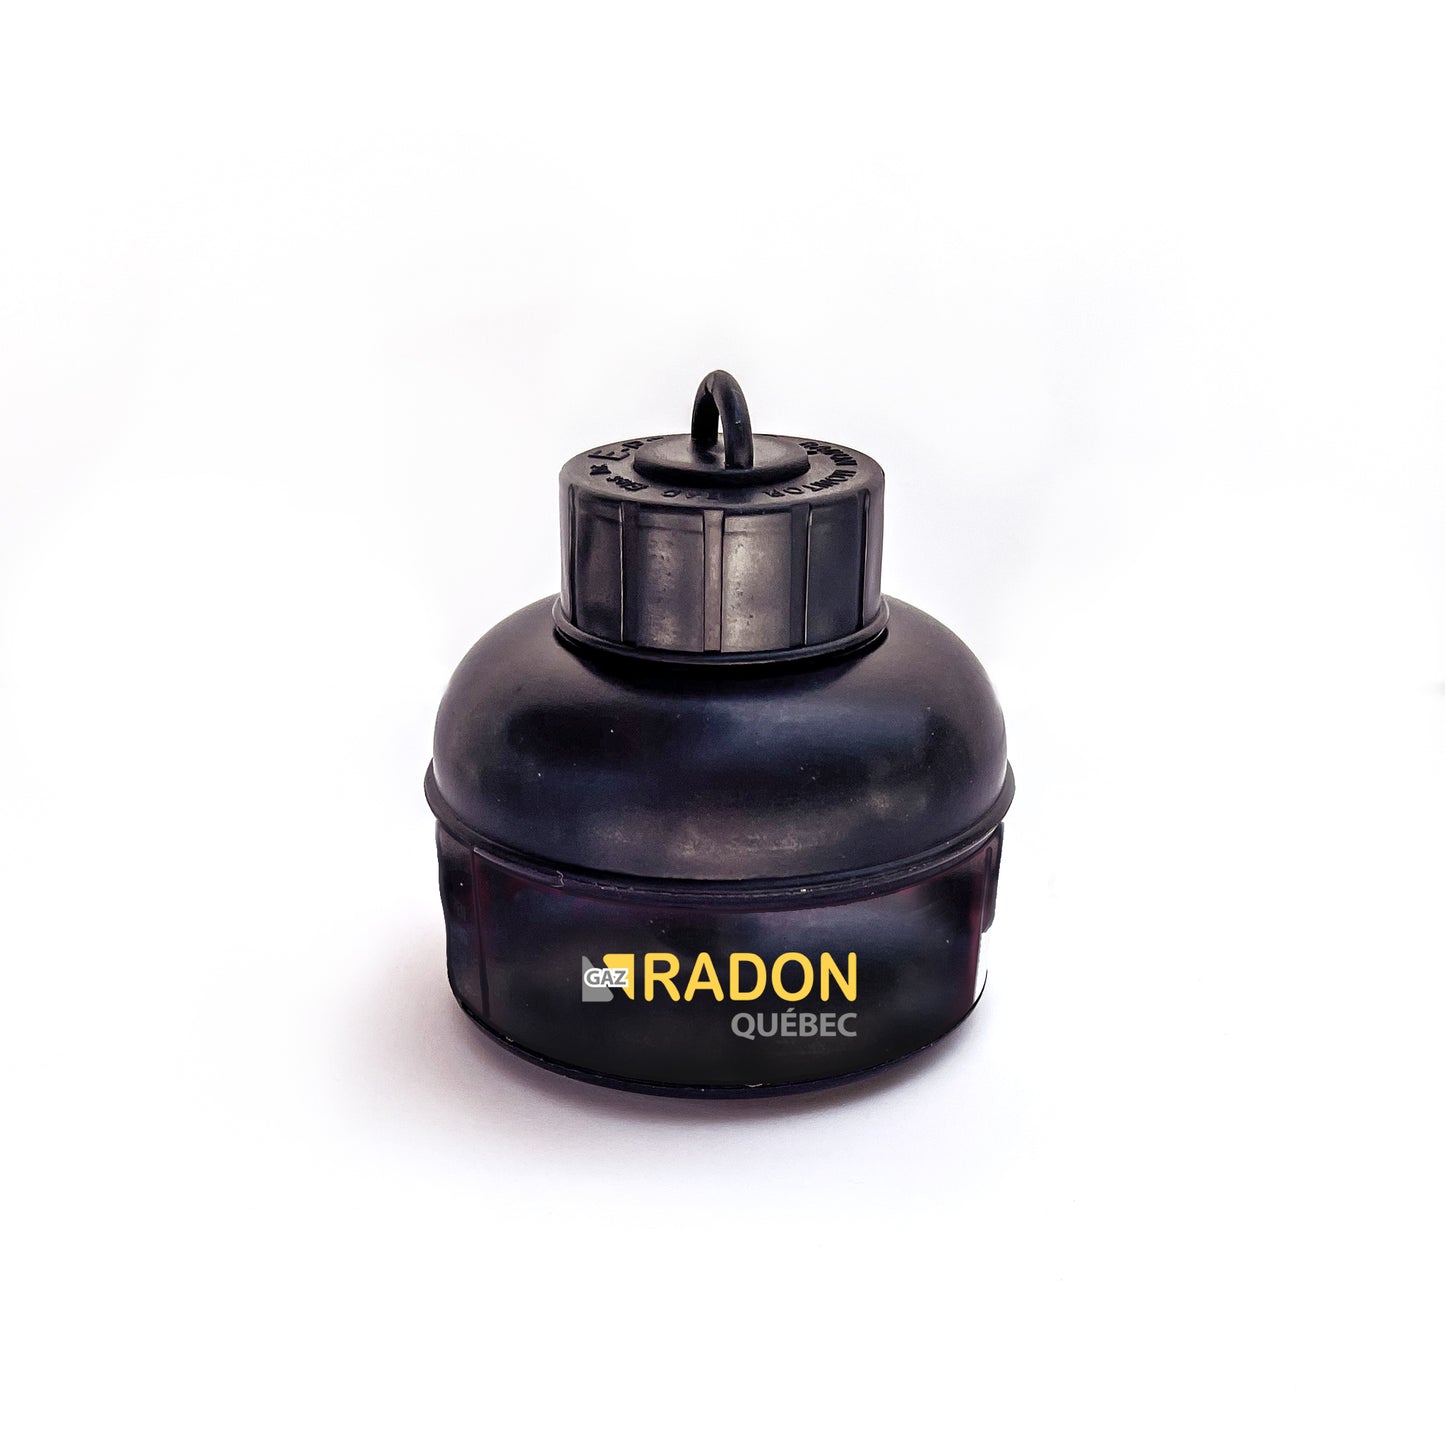 Long term radon measurements